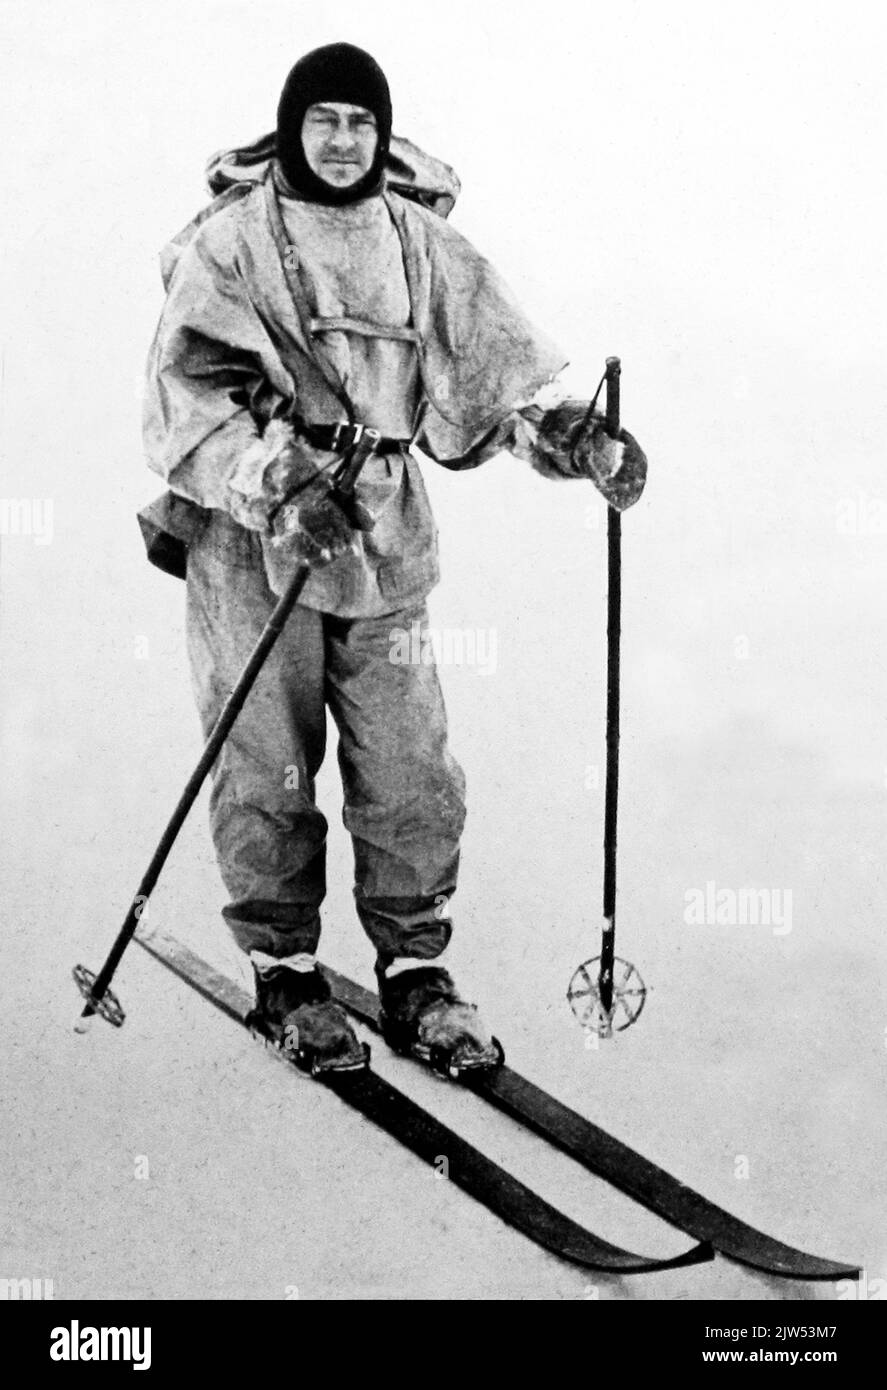 Capitán Scott, Expedición Antártica Británica en 1910 - 1913 Foto de stock